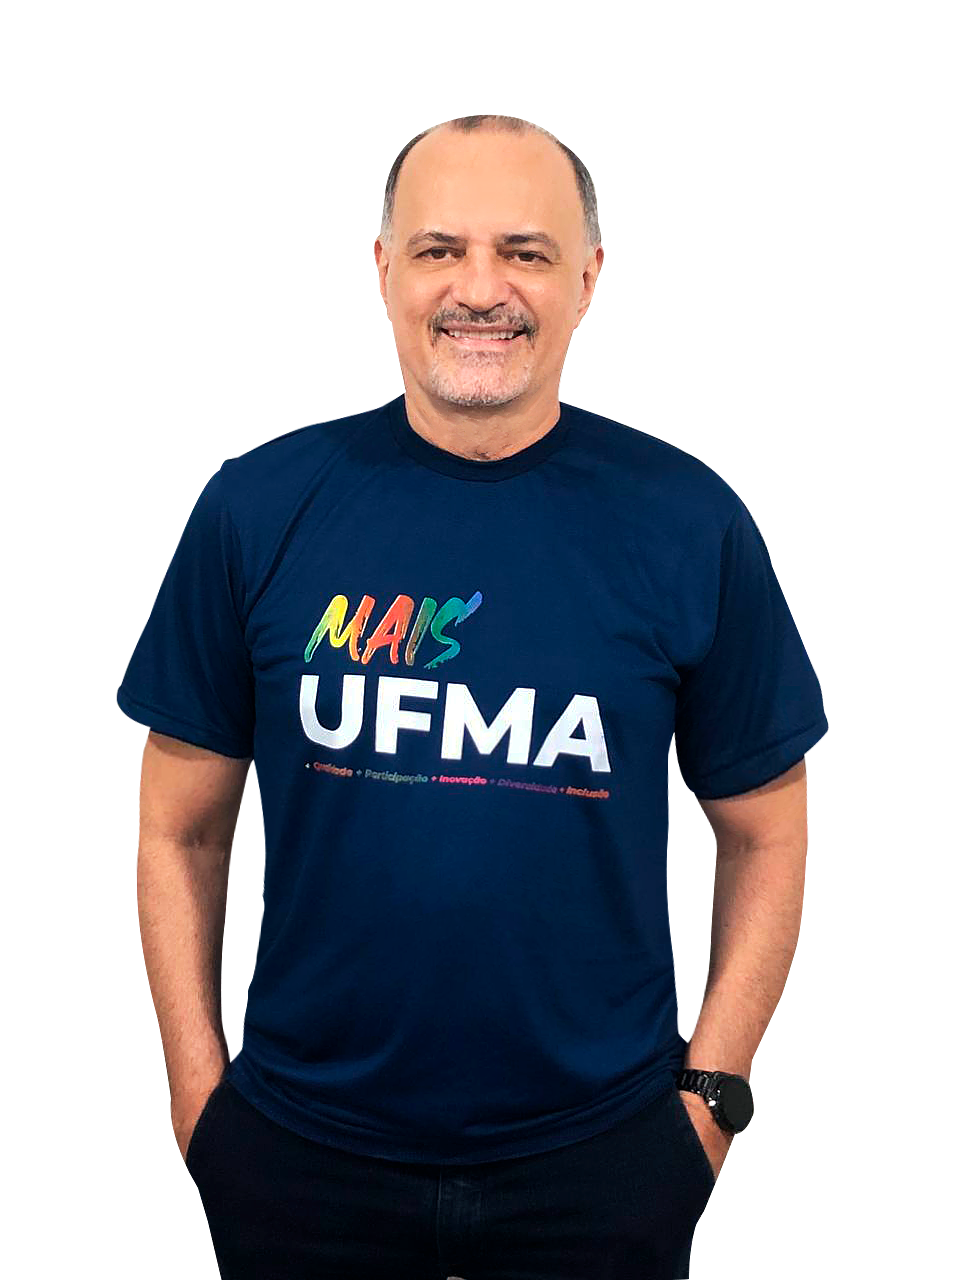 Candidato Fernando Carvalho mantém determinação e engajamento mesmo com adiamento da consulta pública na UFMA